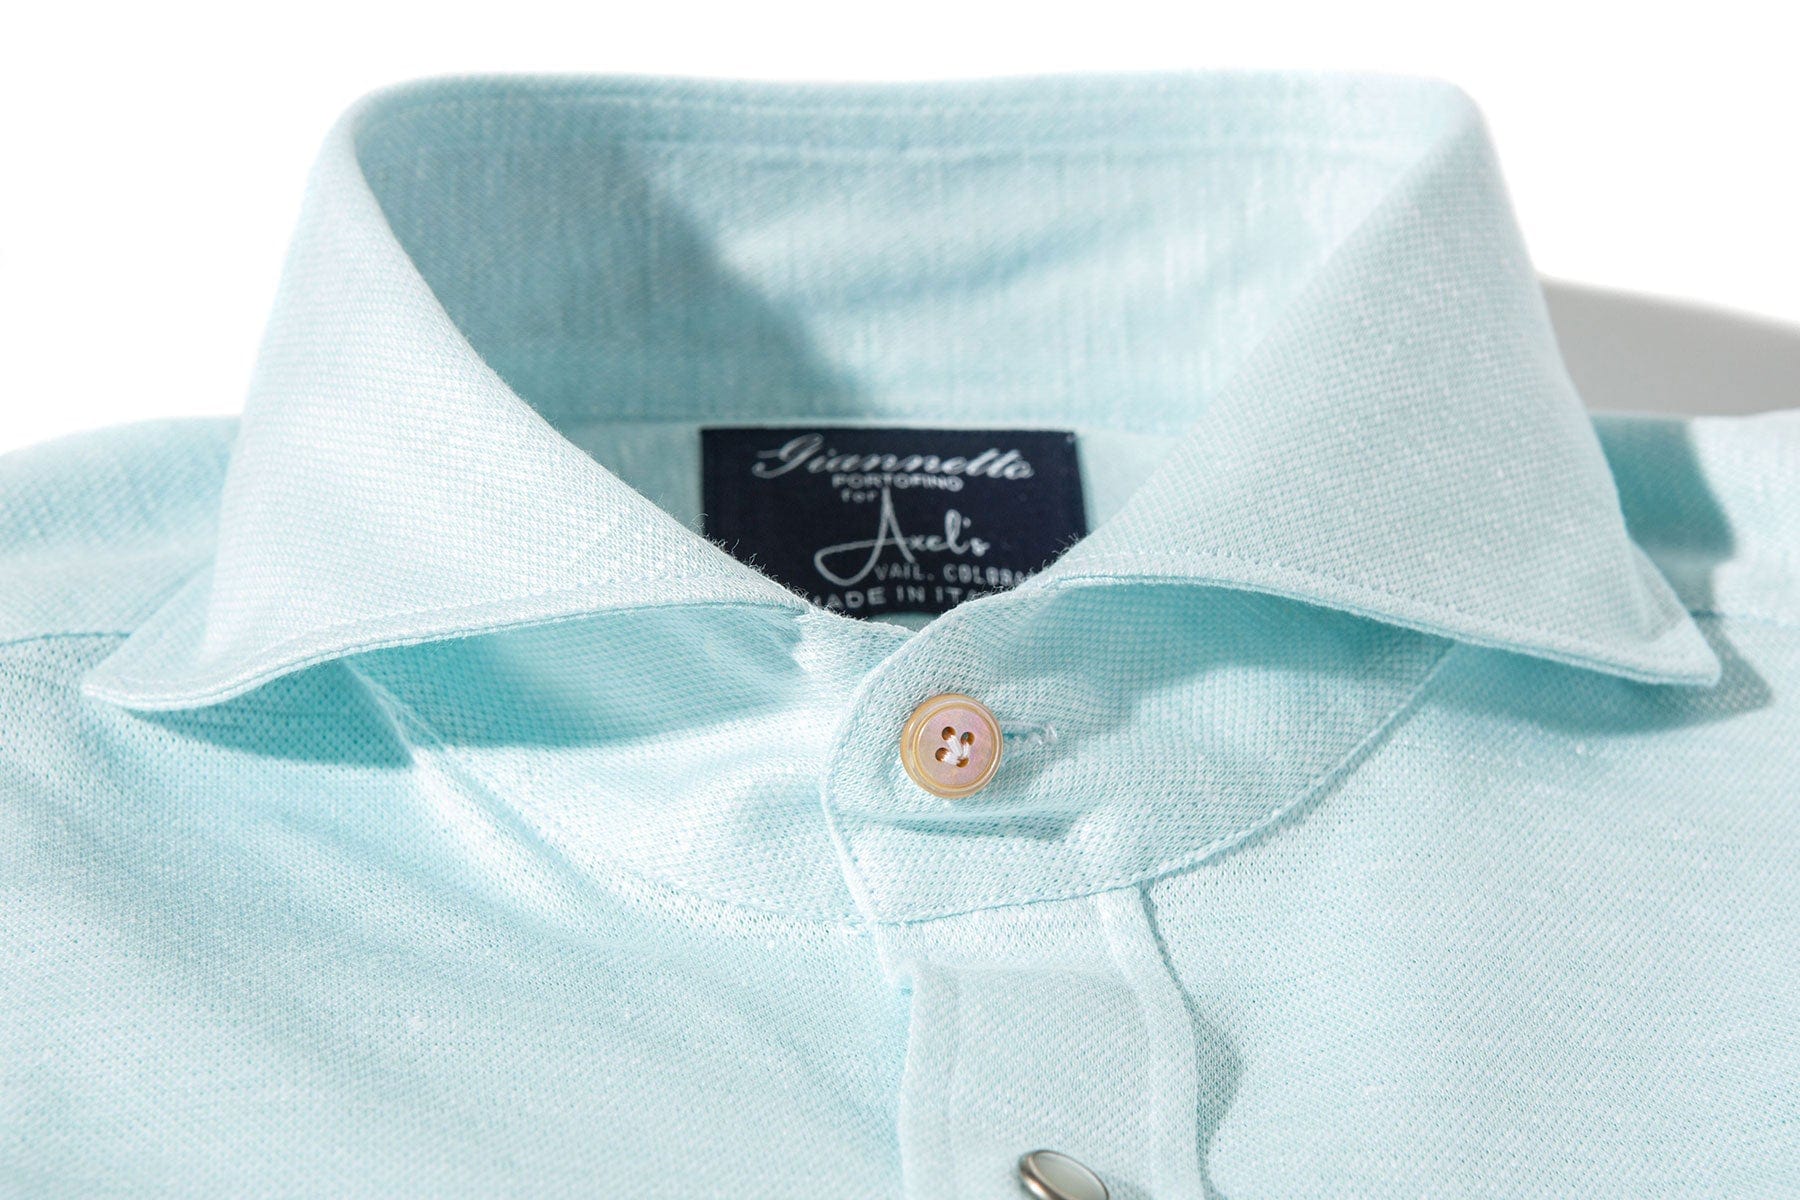 Schwinn Cotton Linen Shirt in Lt. Blue - AXEL'S